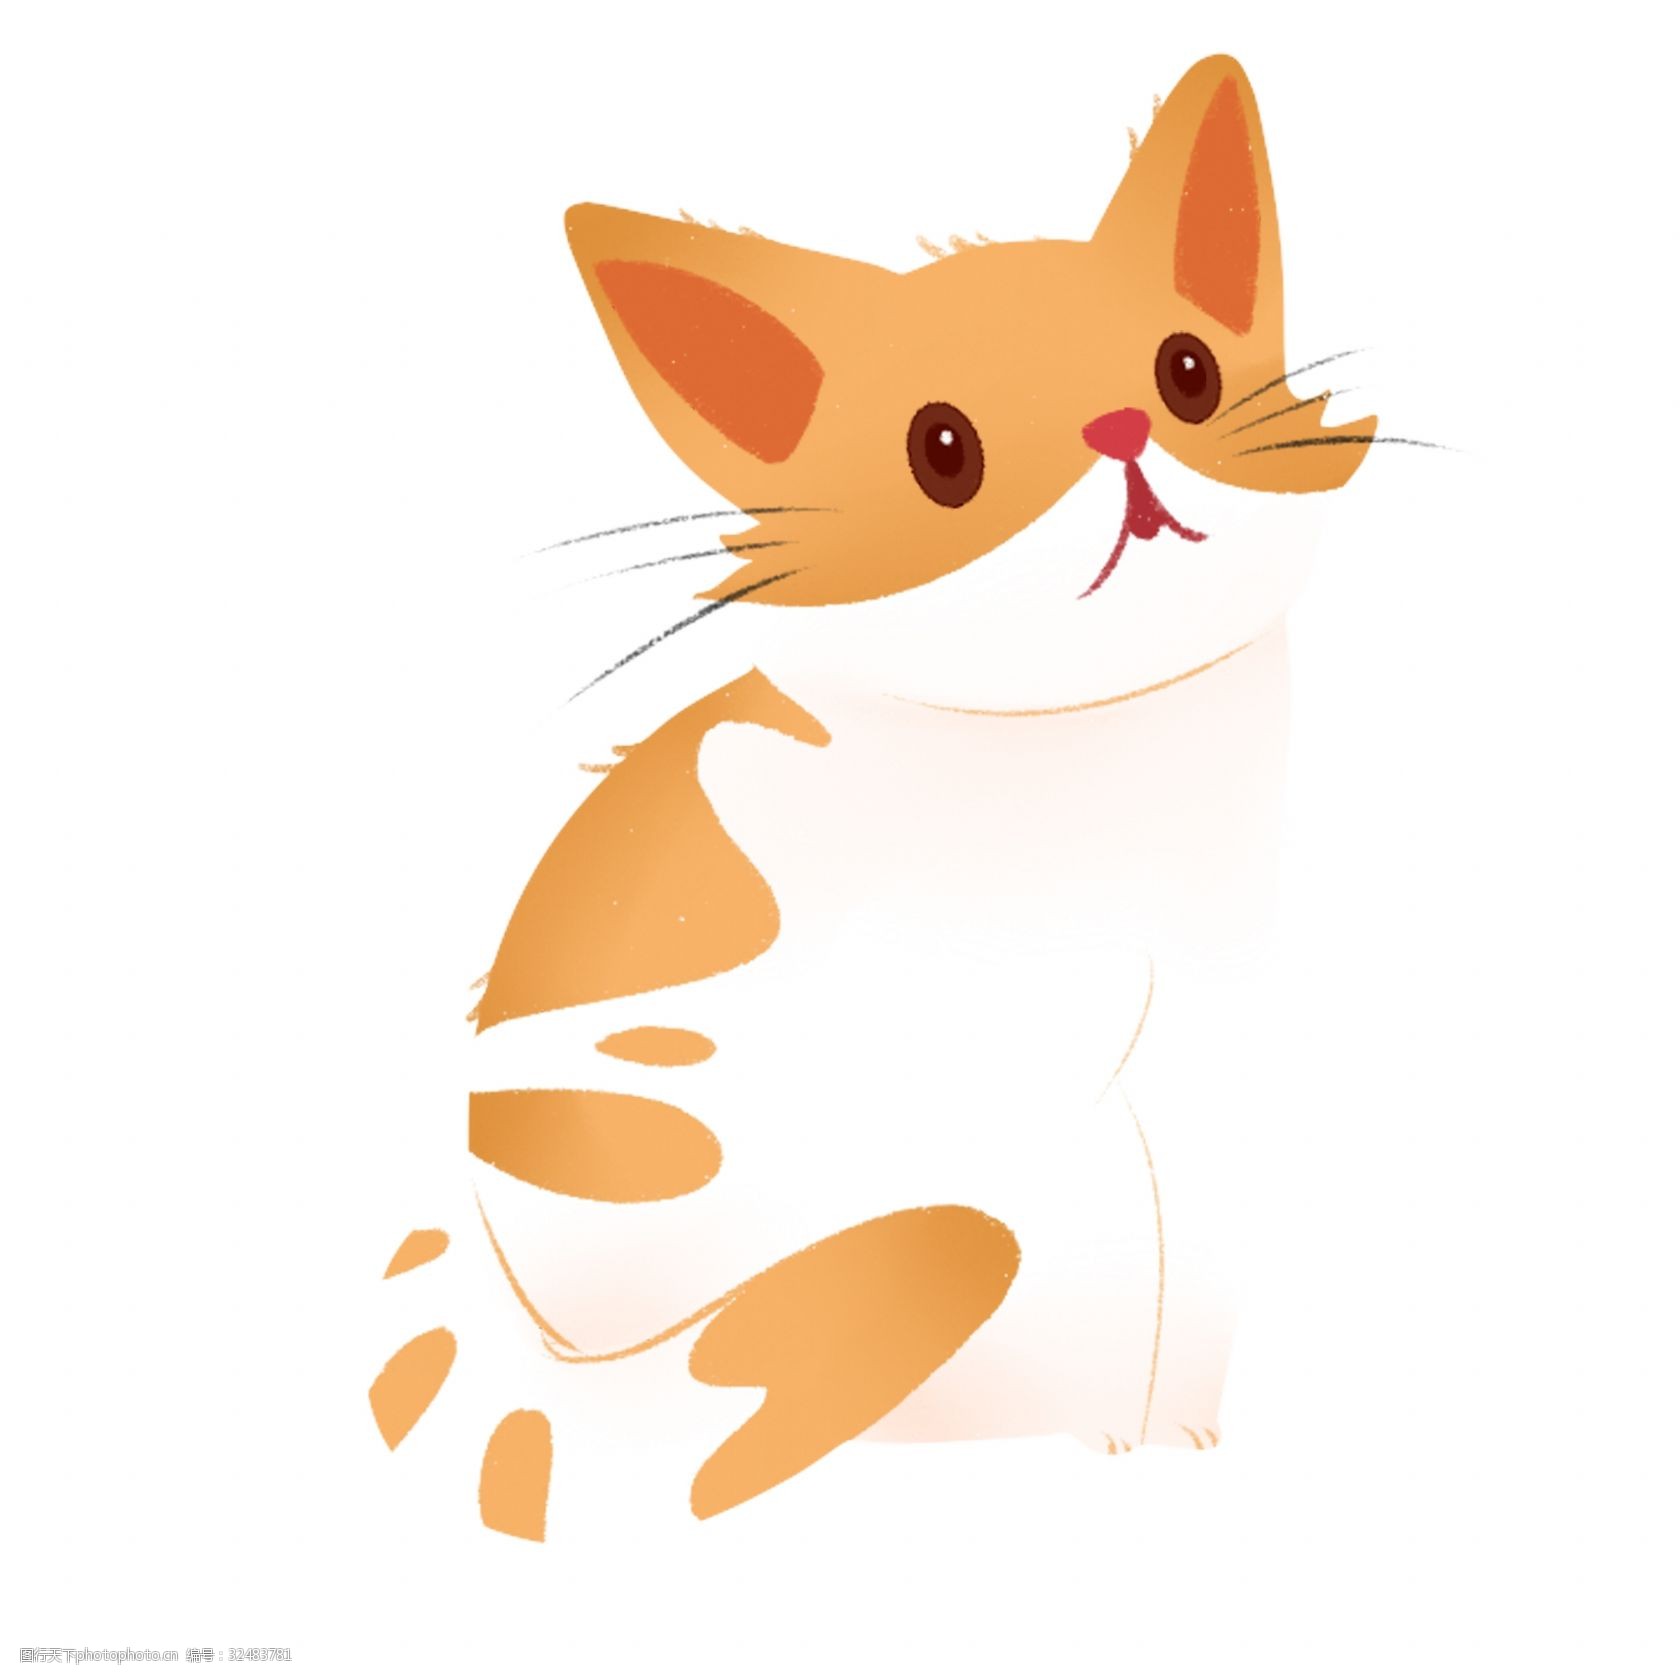 关键词:呆萌可爱小猫咪图案 动物 猫咪 手绘 绘画 卡通 简约 小清新